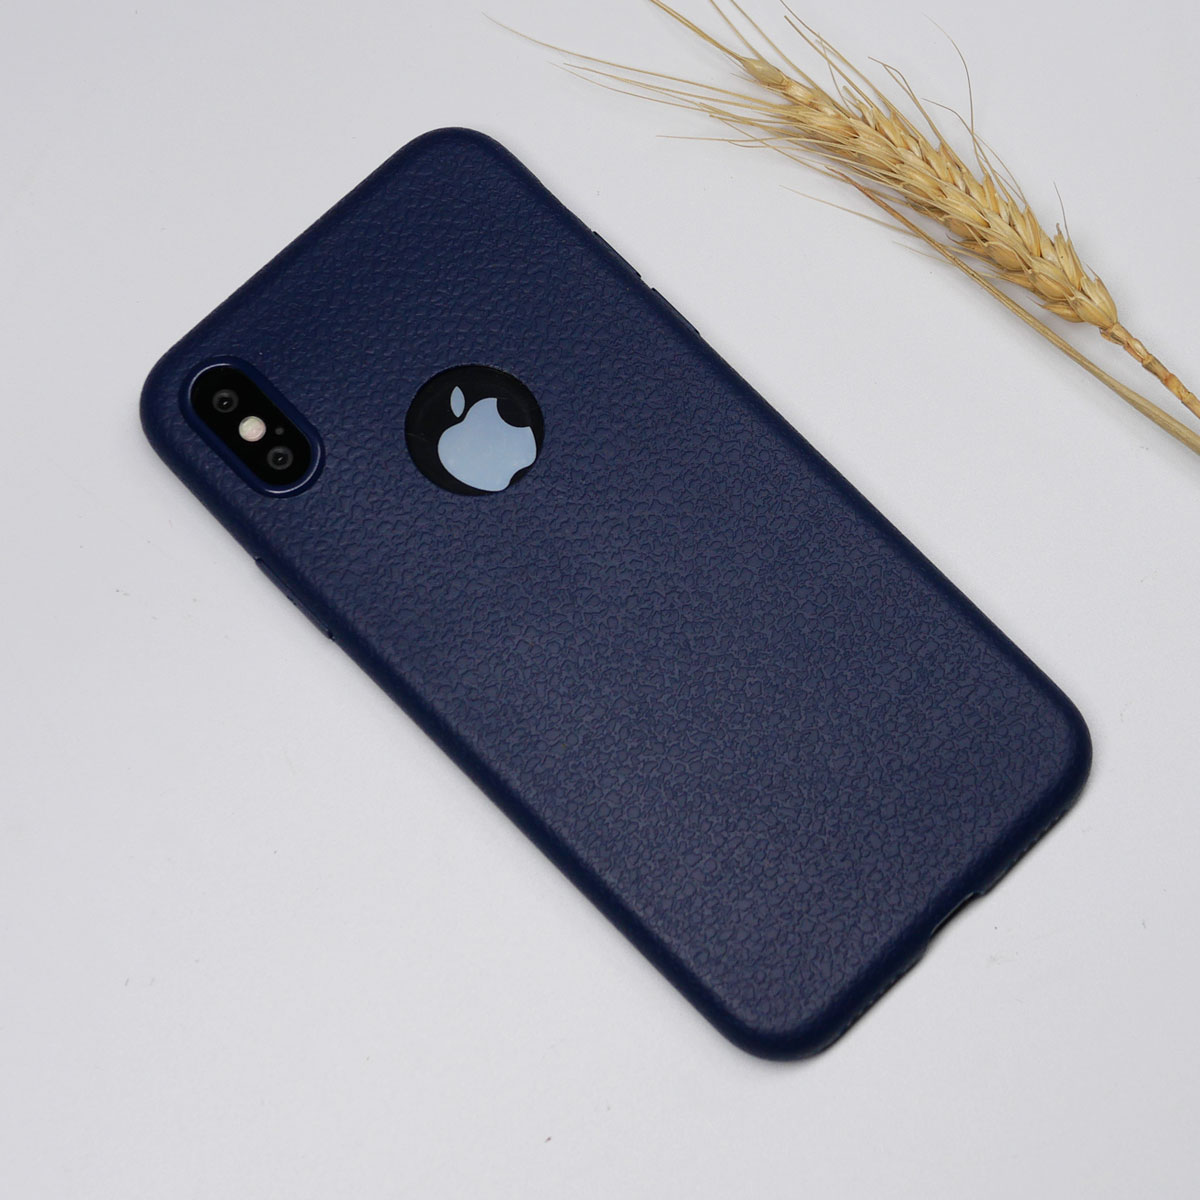 138101 เคส iPhone X สีน้ำเงิน
